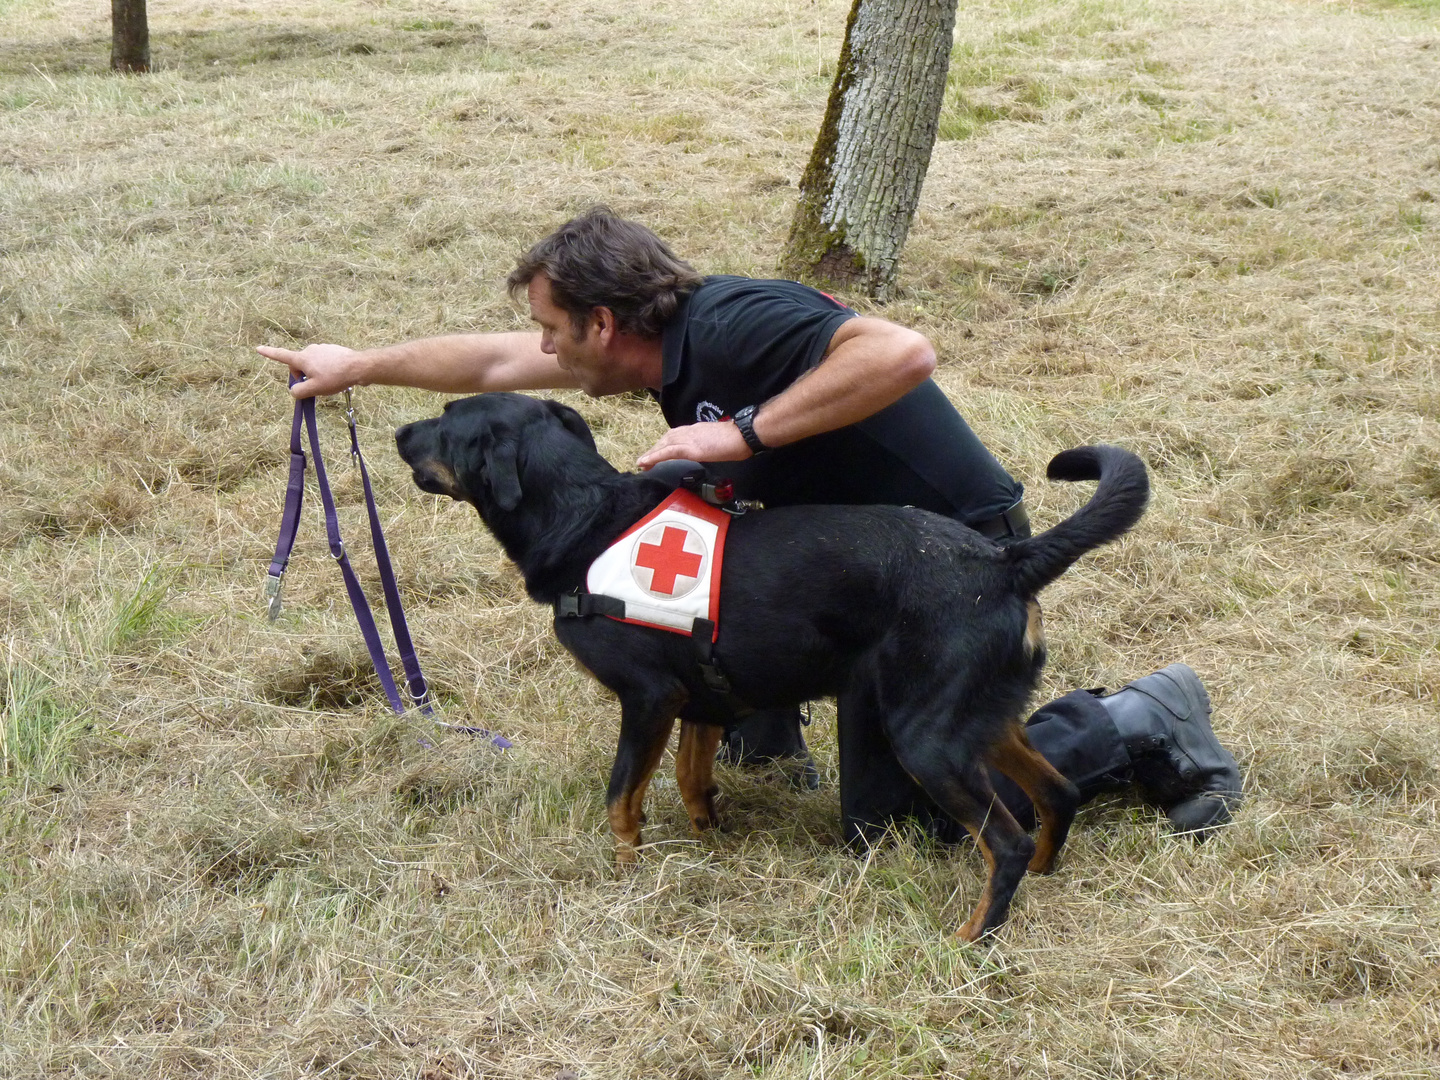 DRK Rettungshundestaffel im Trainingseinsatz - "such"!